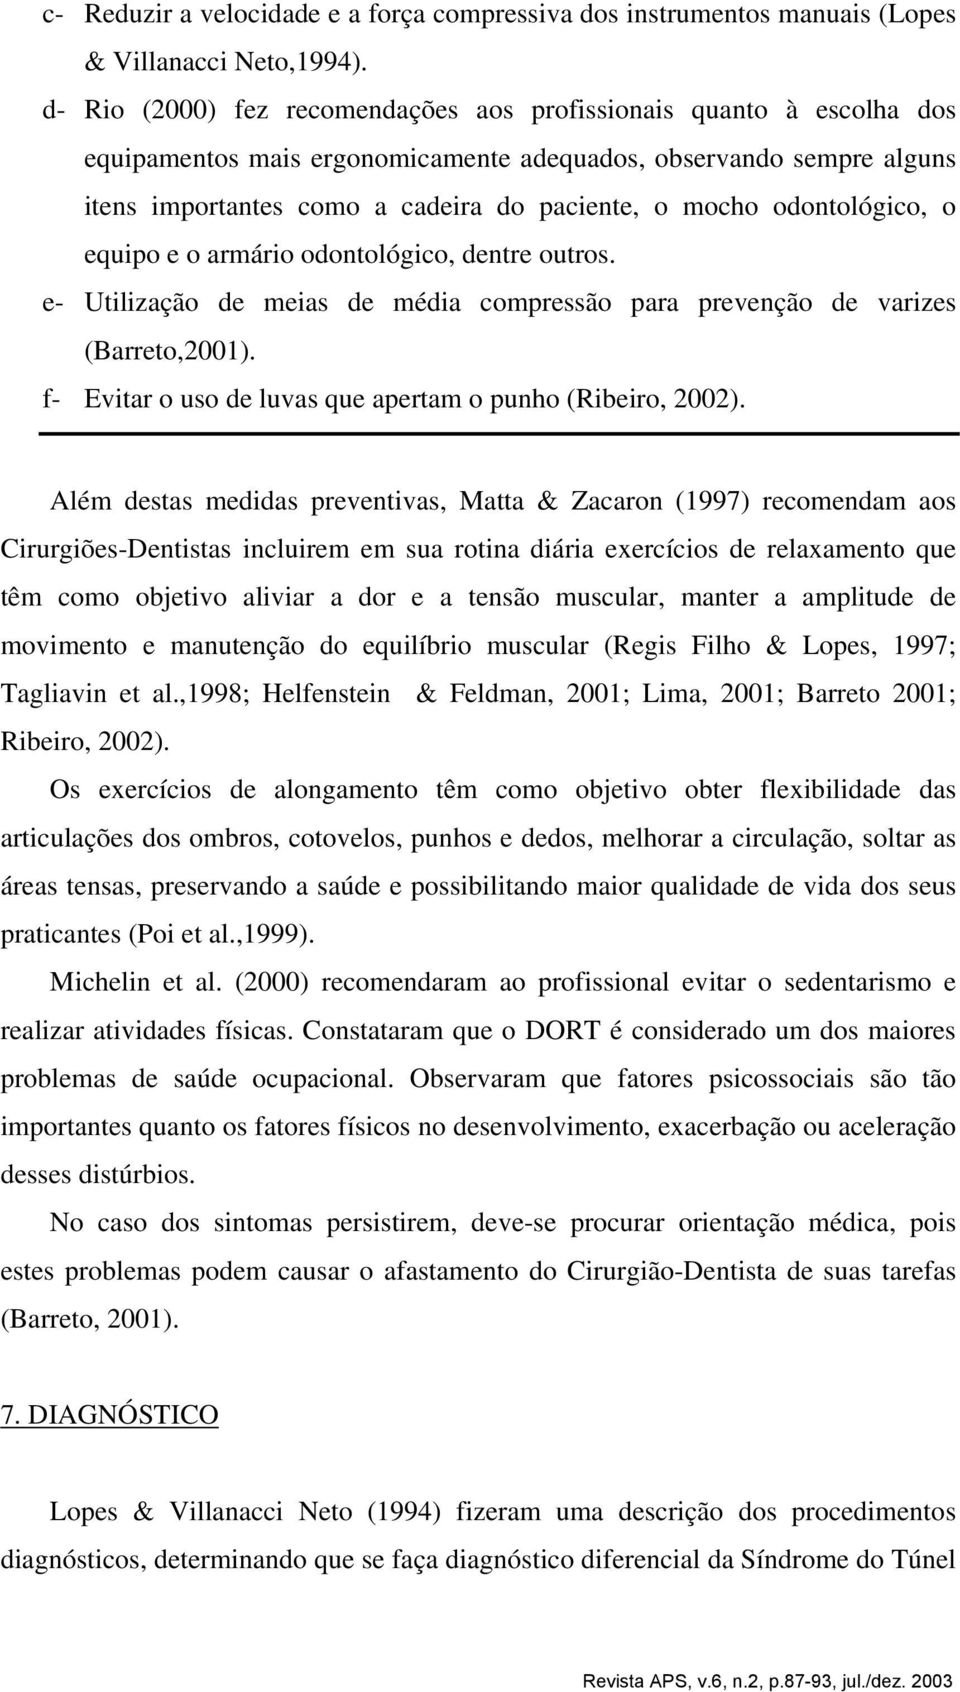 odontológico, o equipo e o armário odontológico, dentre outros. e- Utilização de meias de média compressão para prevenção de varizes (Barreto,2001).